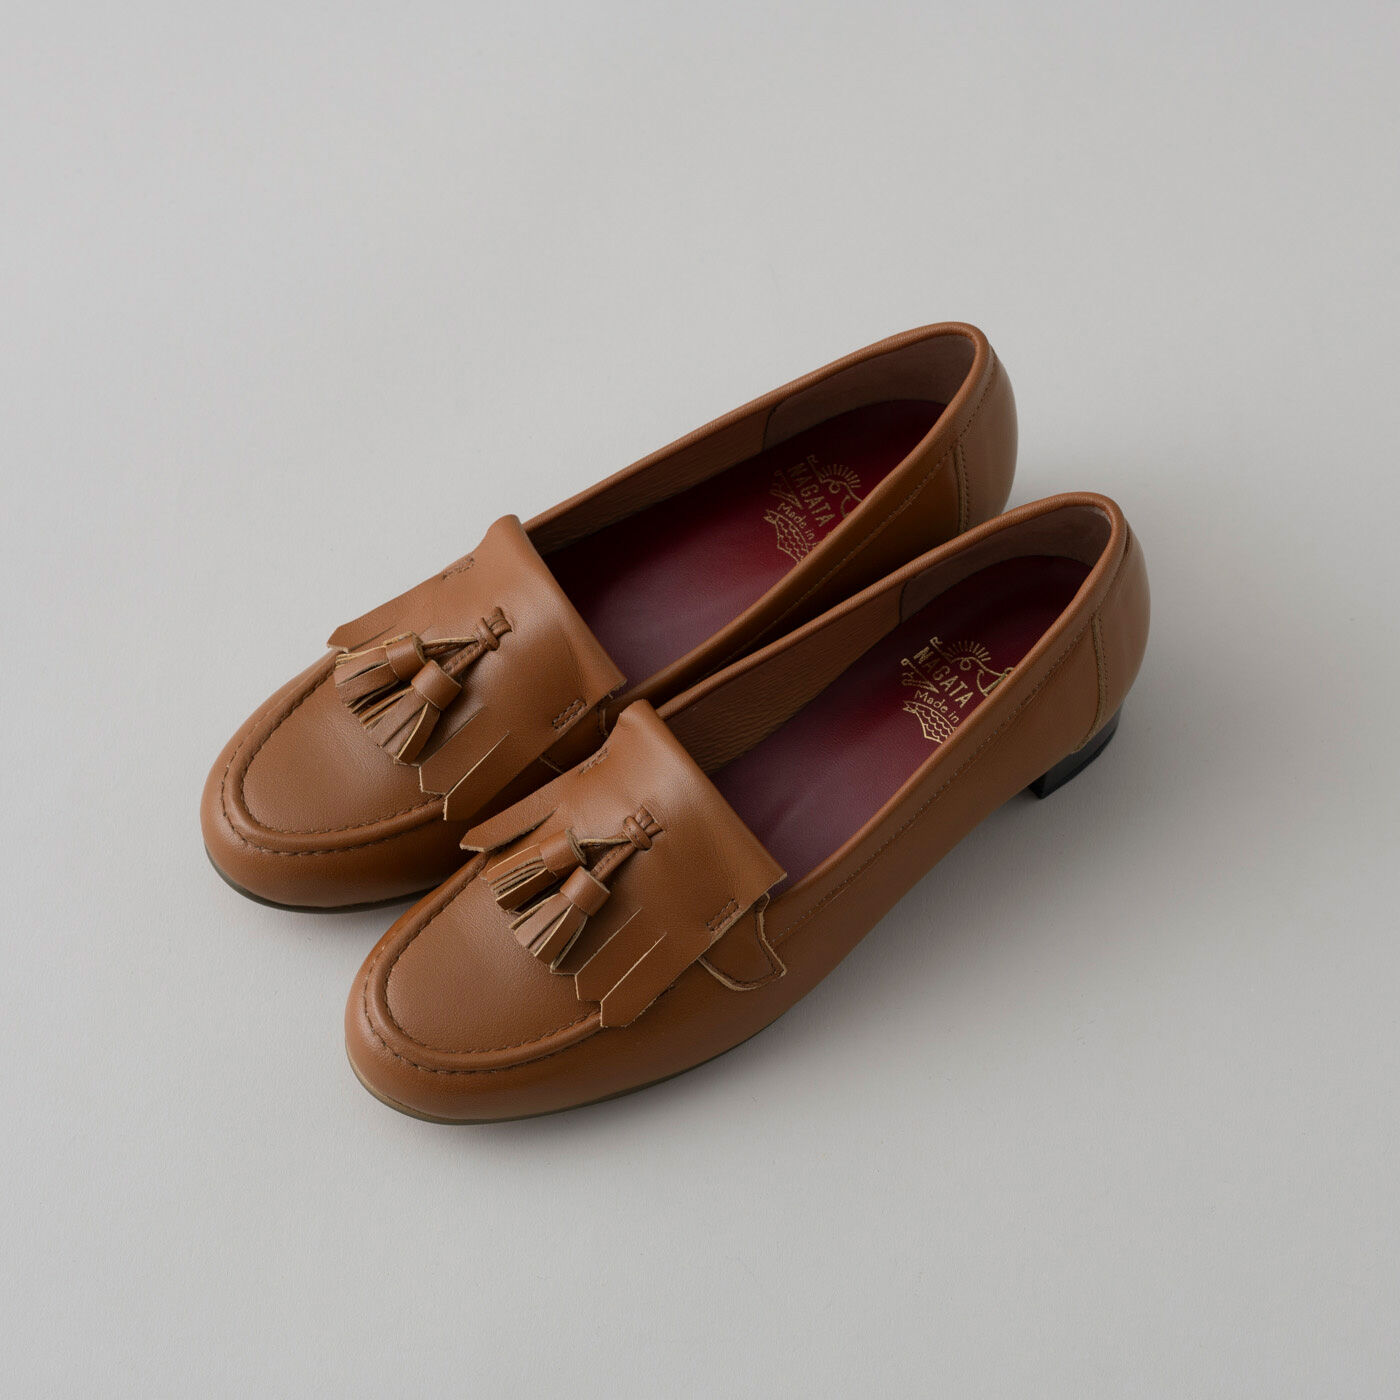 ＆Stories|長田の靴メーカーと作った　職人本革のタッセルローファー〈ブラウン〉|幅広の足もすっぽり包み込みつつ、ほっそりと上品な足もとを演出します。